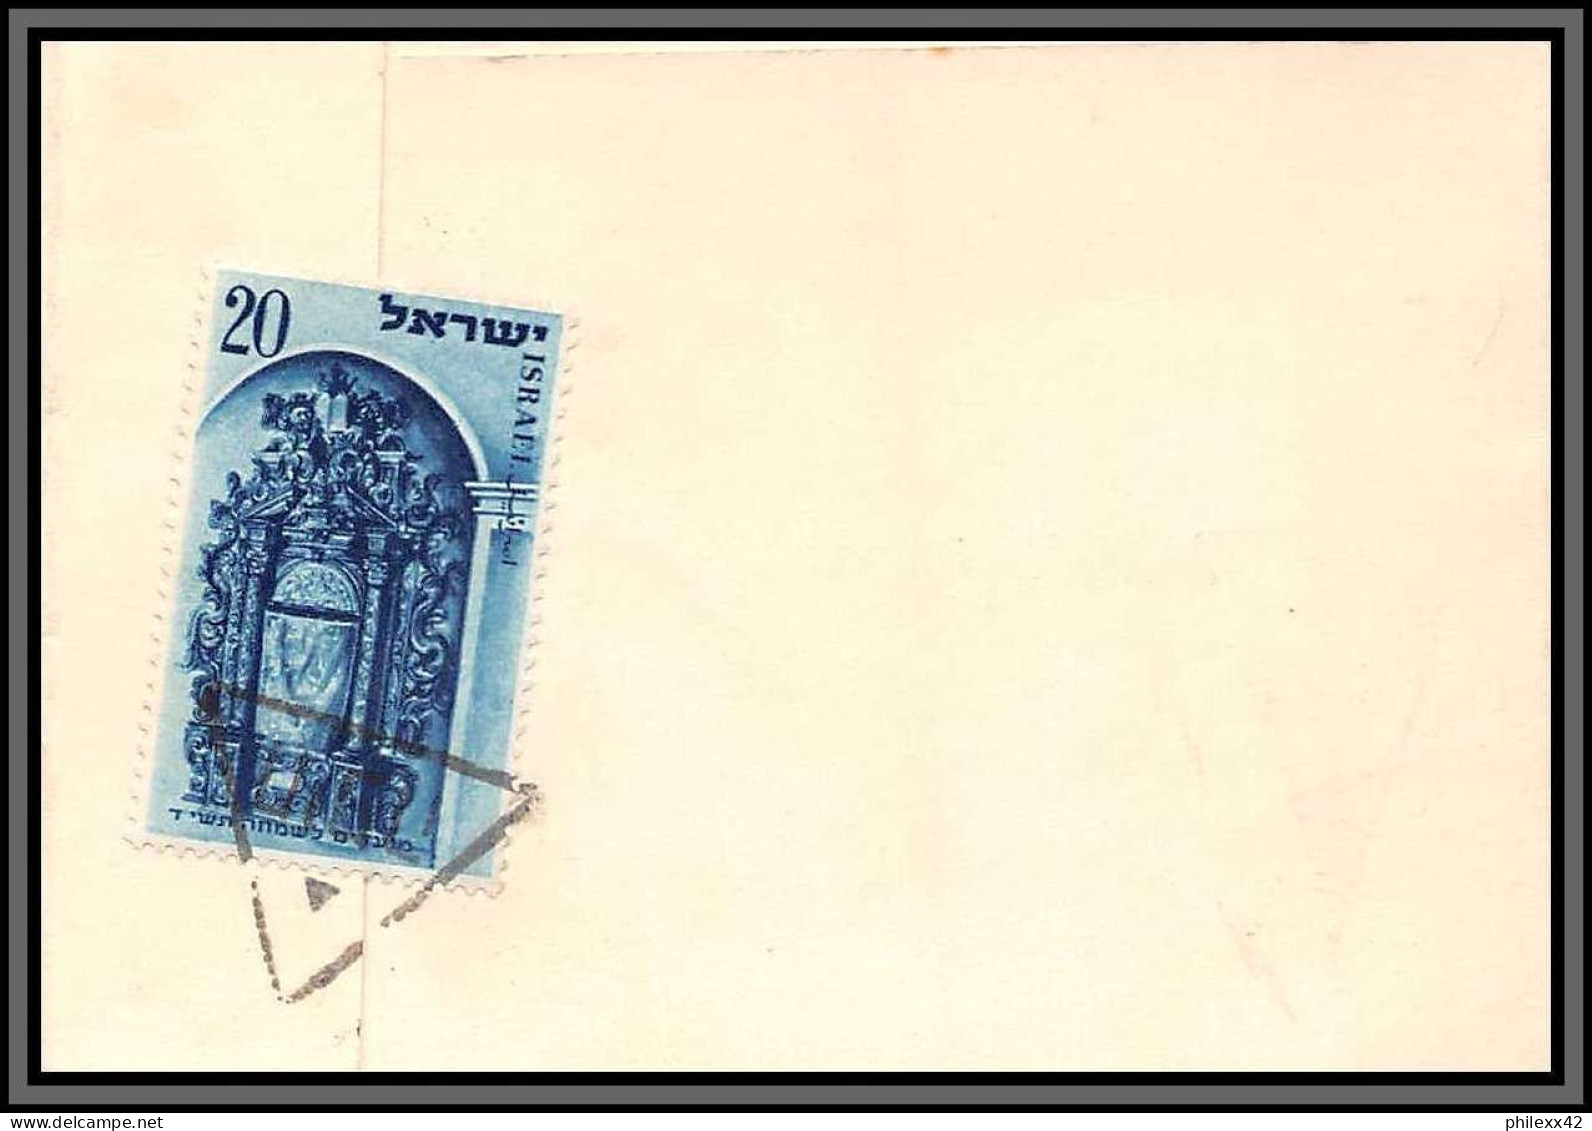 11563 N°68 NOUVEL AN 1953 lot de 3 lettres cover israels 